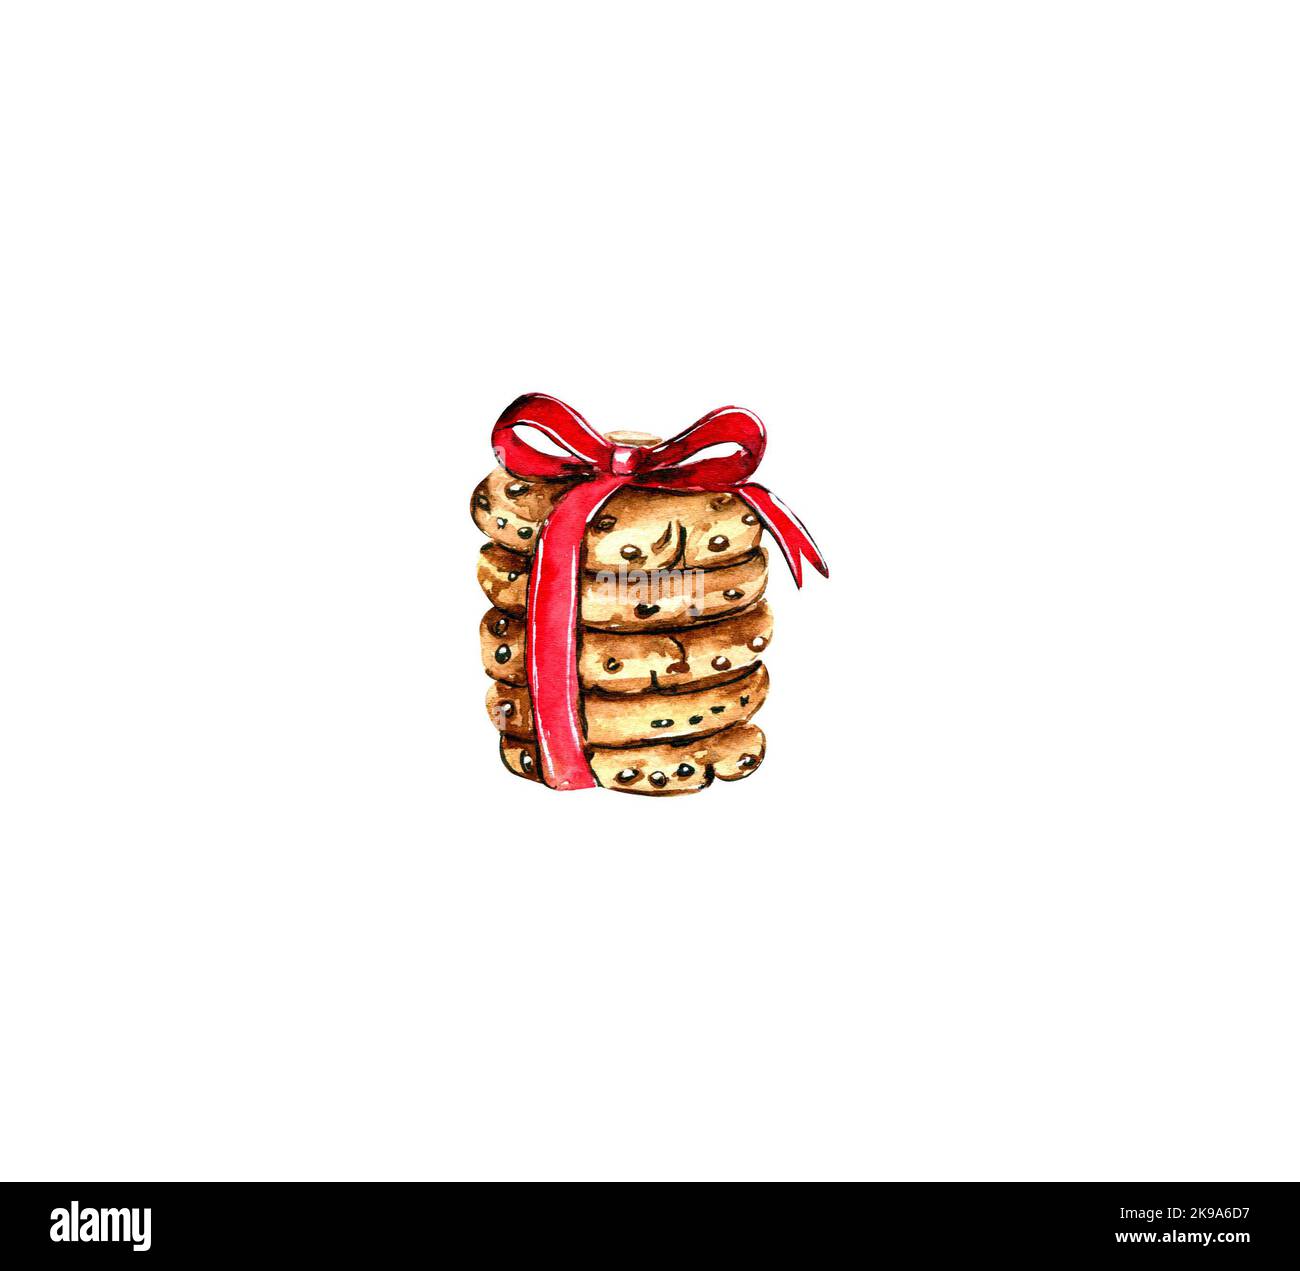 Aquarell-Stapel von fünf Schokolade Chip Cookies mit rotem Band auf weißem Hintergrund isoliert gebunden. Handgezeichnete Abbildung. Grußkarte zum neuen Jahr. Stockfoto